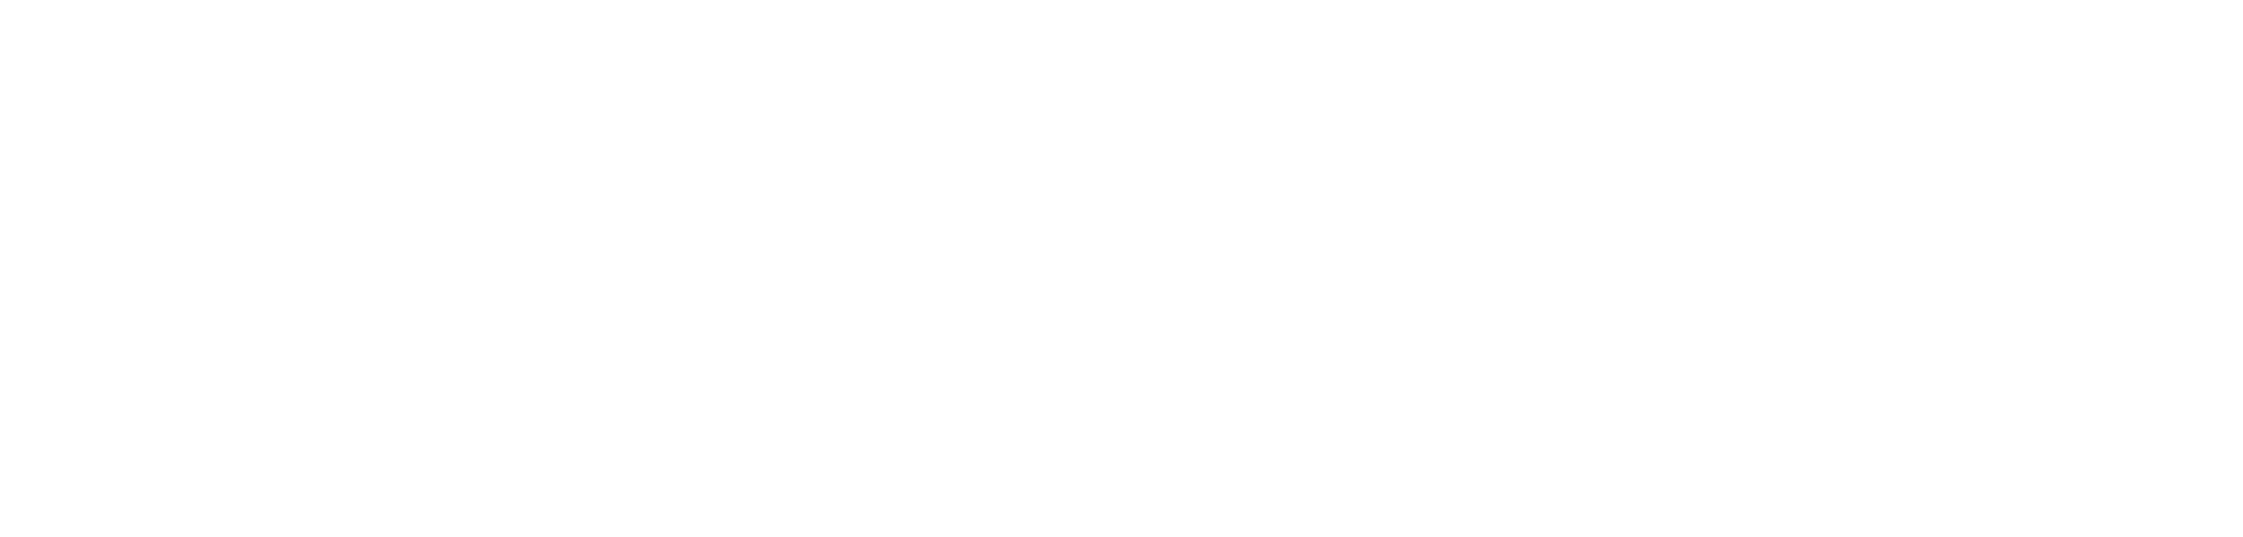 Mapware-logo